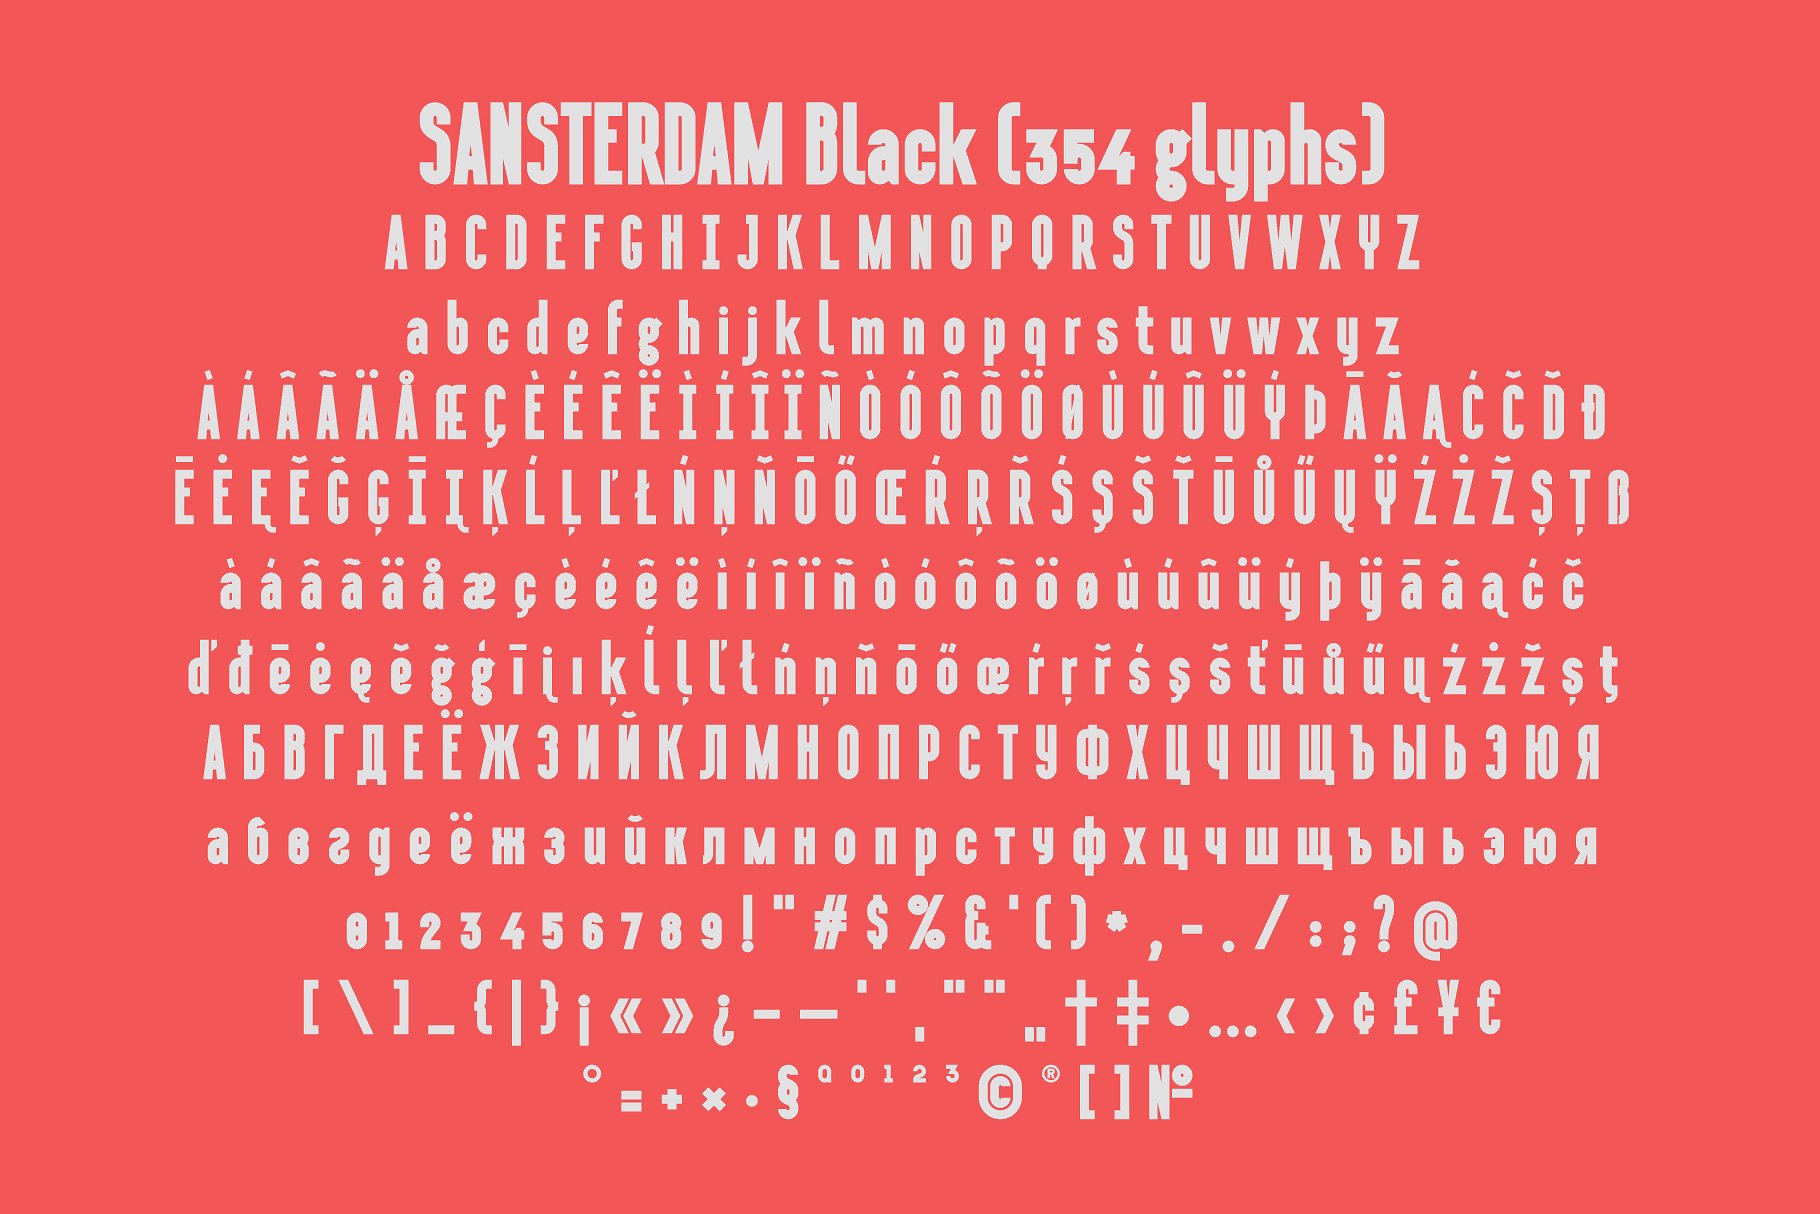 Пример шрифта Sansterdam Outline Deco